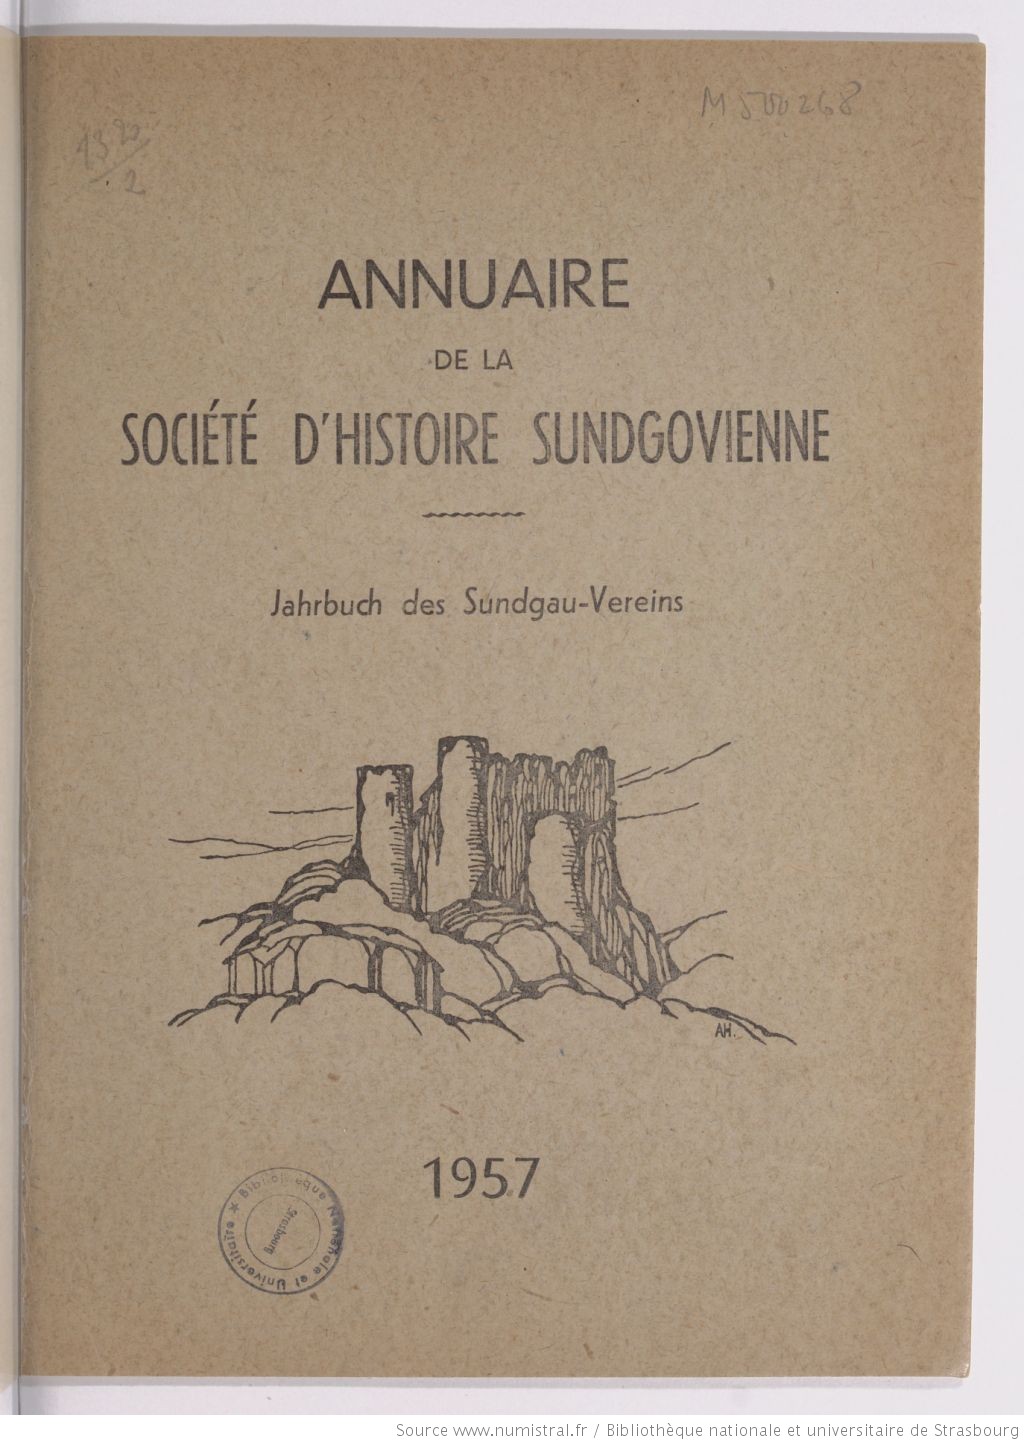 Annuaire de la société d'histoire sundgovienne